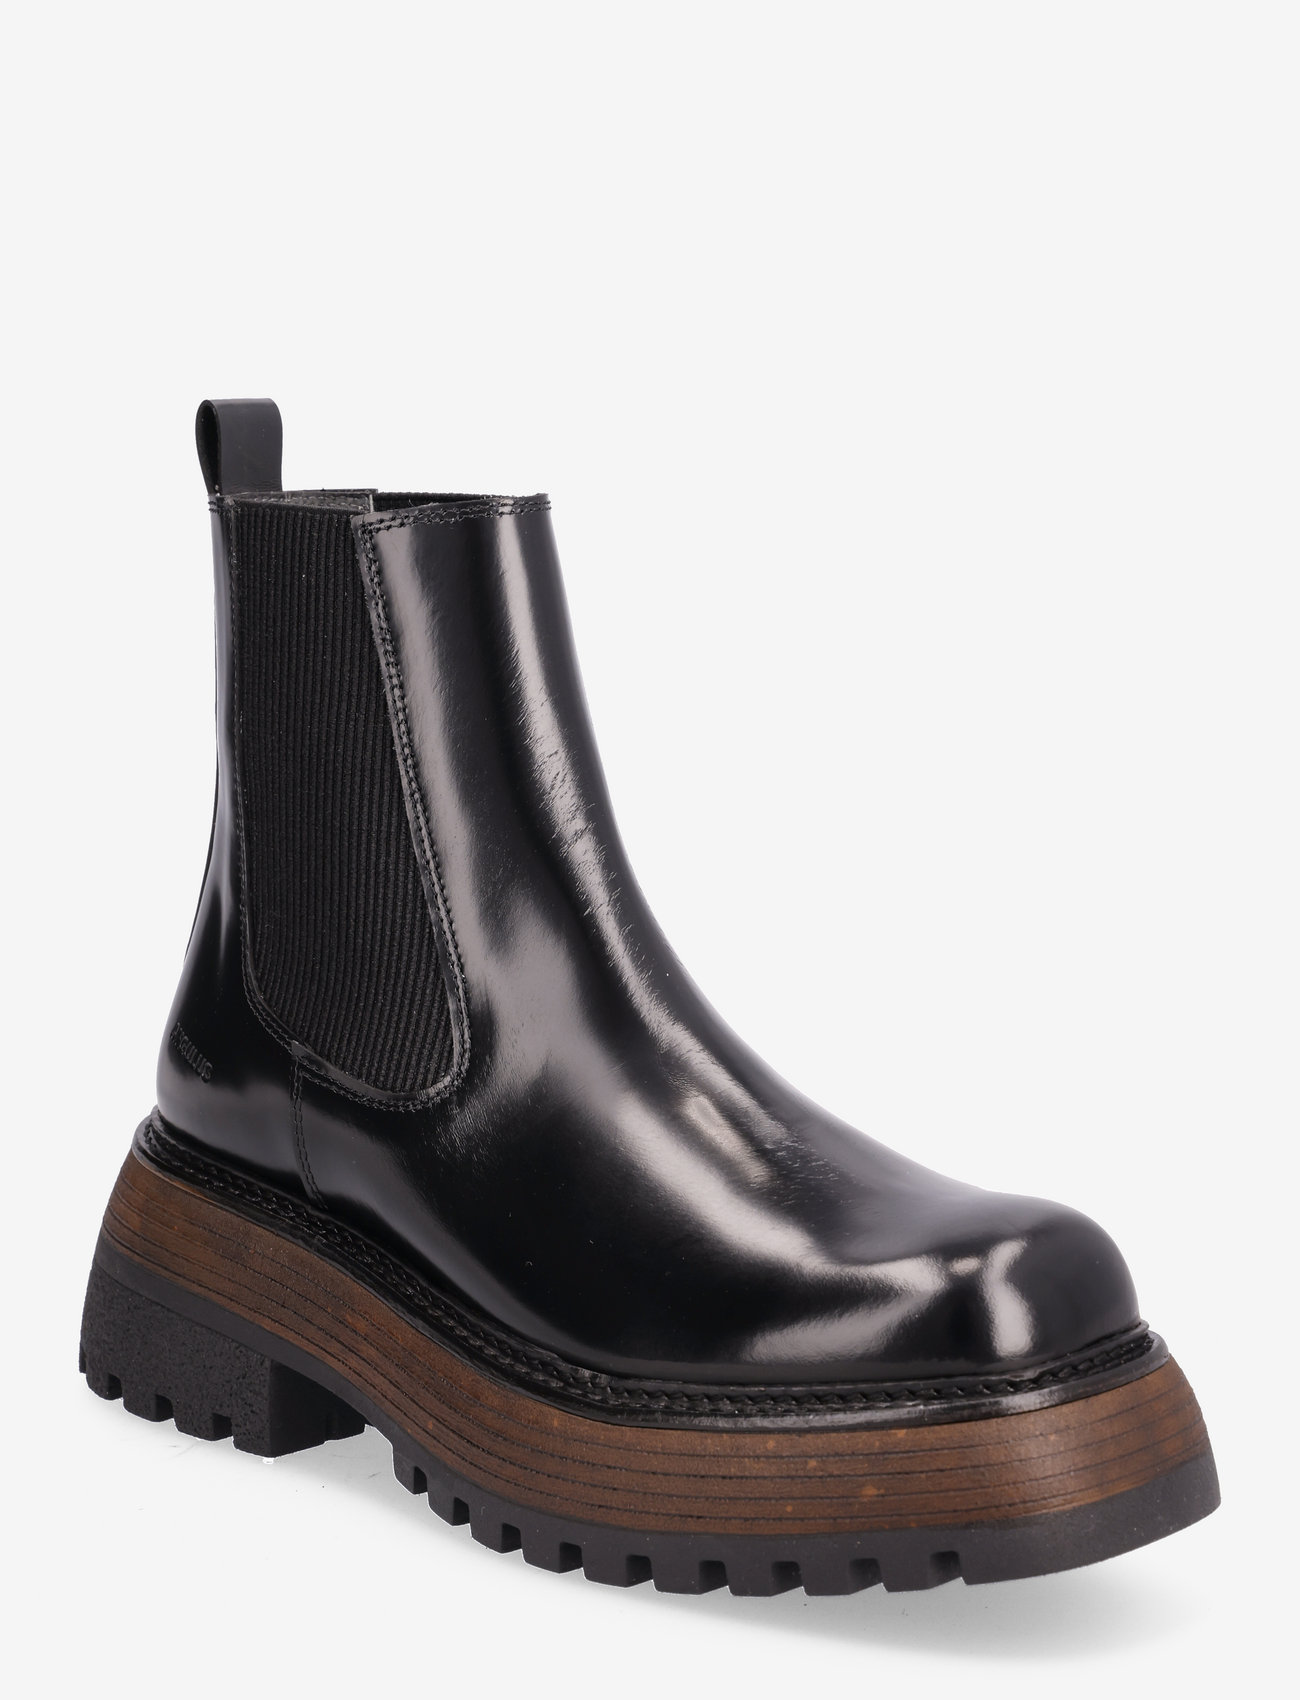 ANGULUS - Boots - flat - chelsea boots - 1425/019 black/black - 0